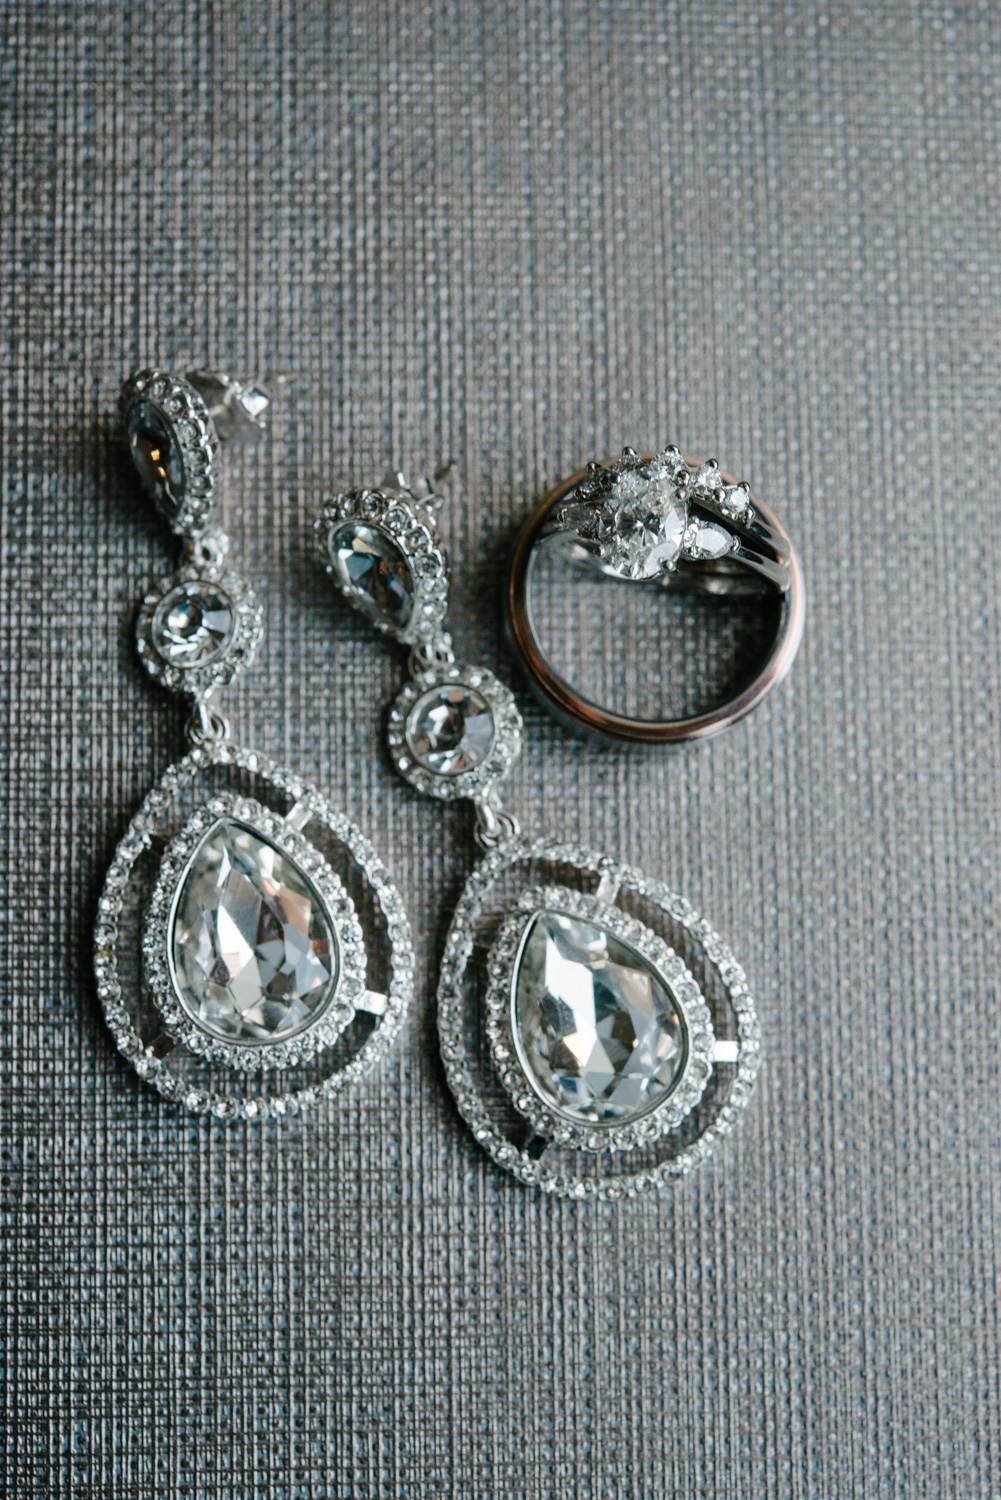 Diamond earrings and wedding rings